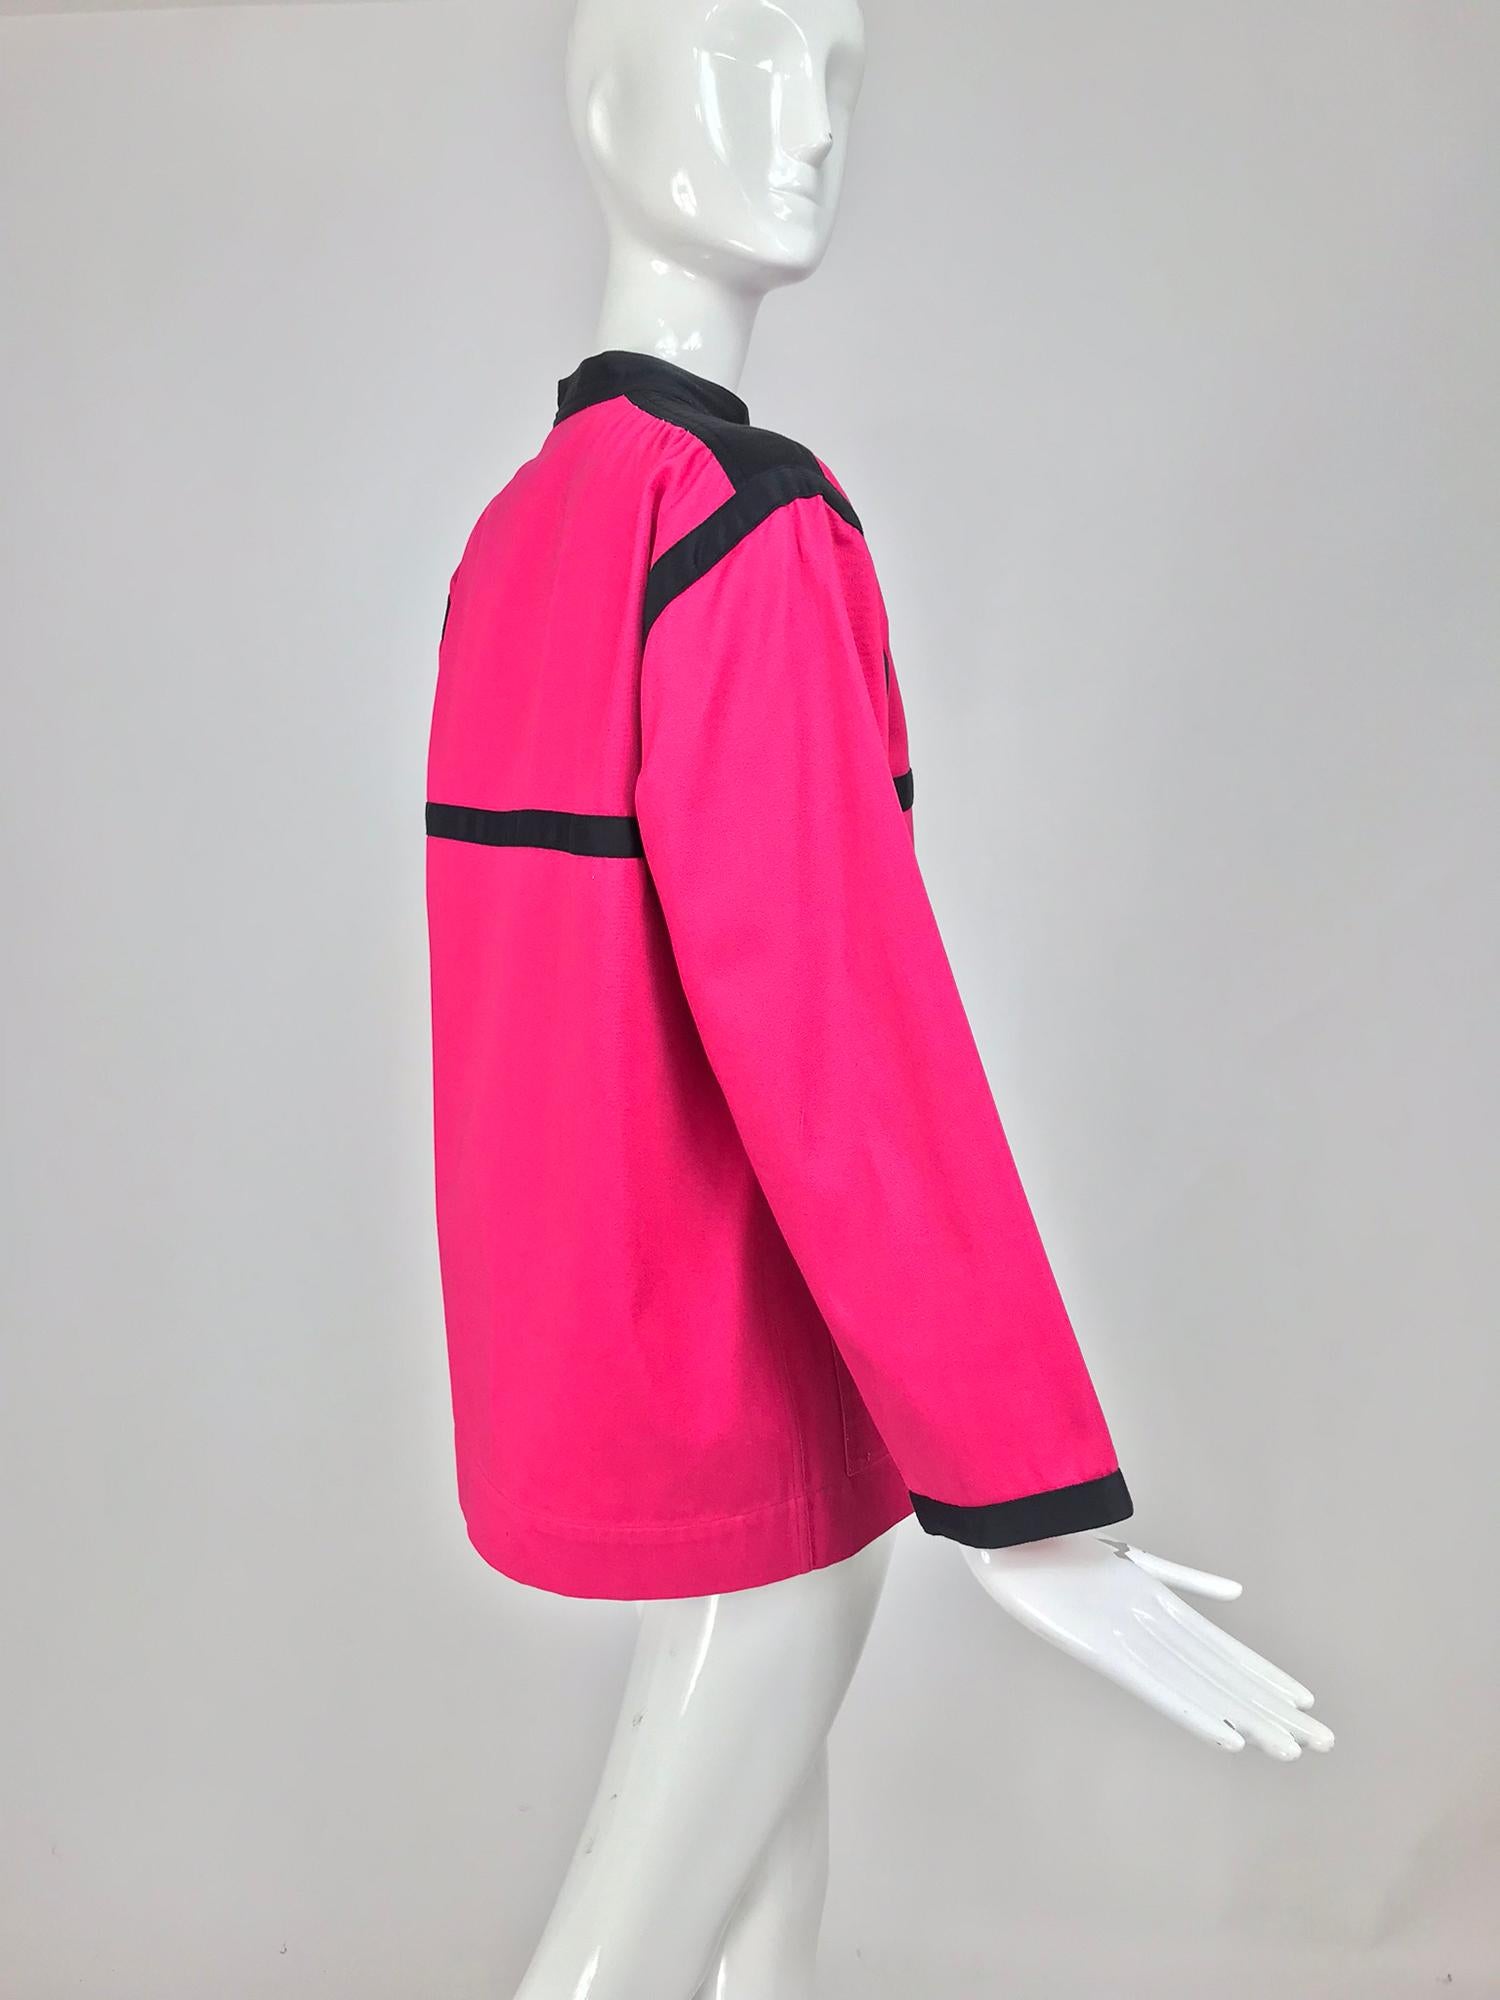 Women's Yves Saint Laurent Hot Pink Colour Block Jacket 1970s For Sale